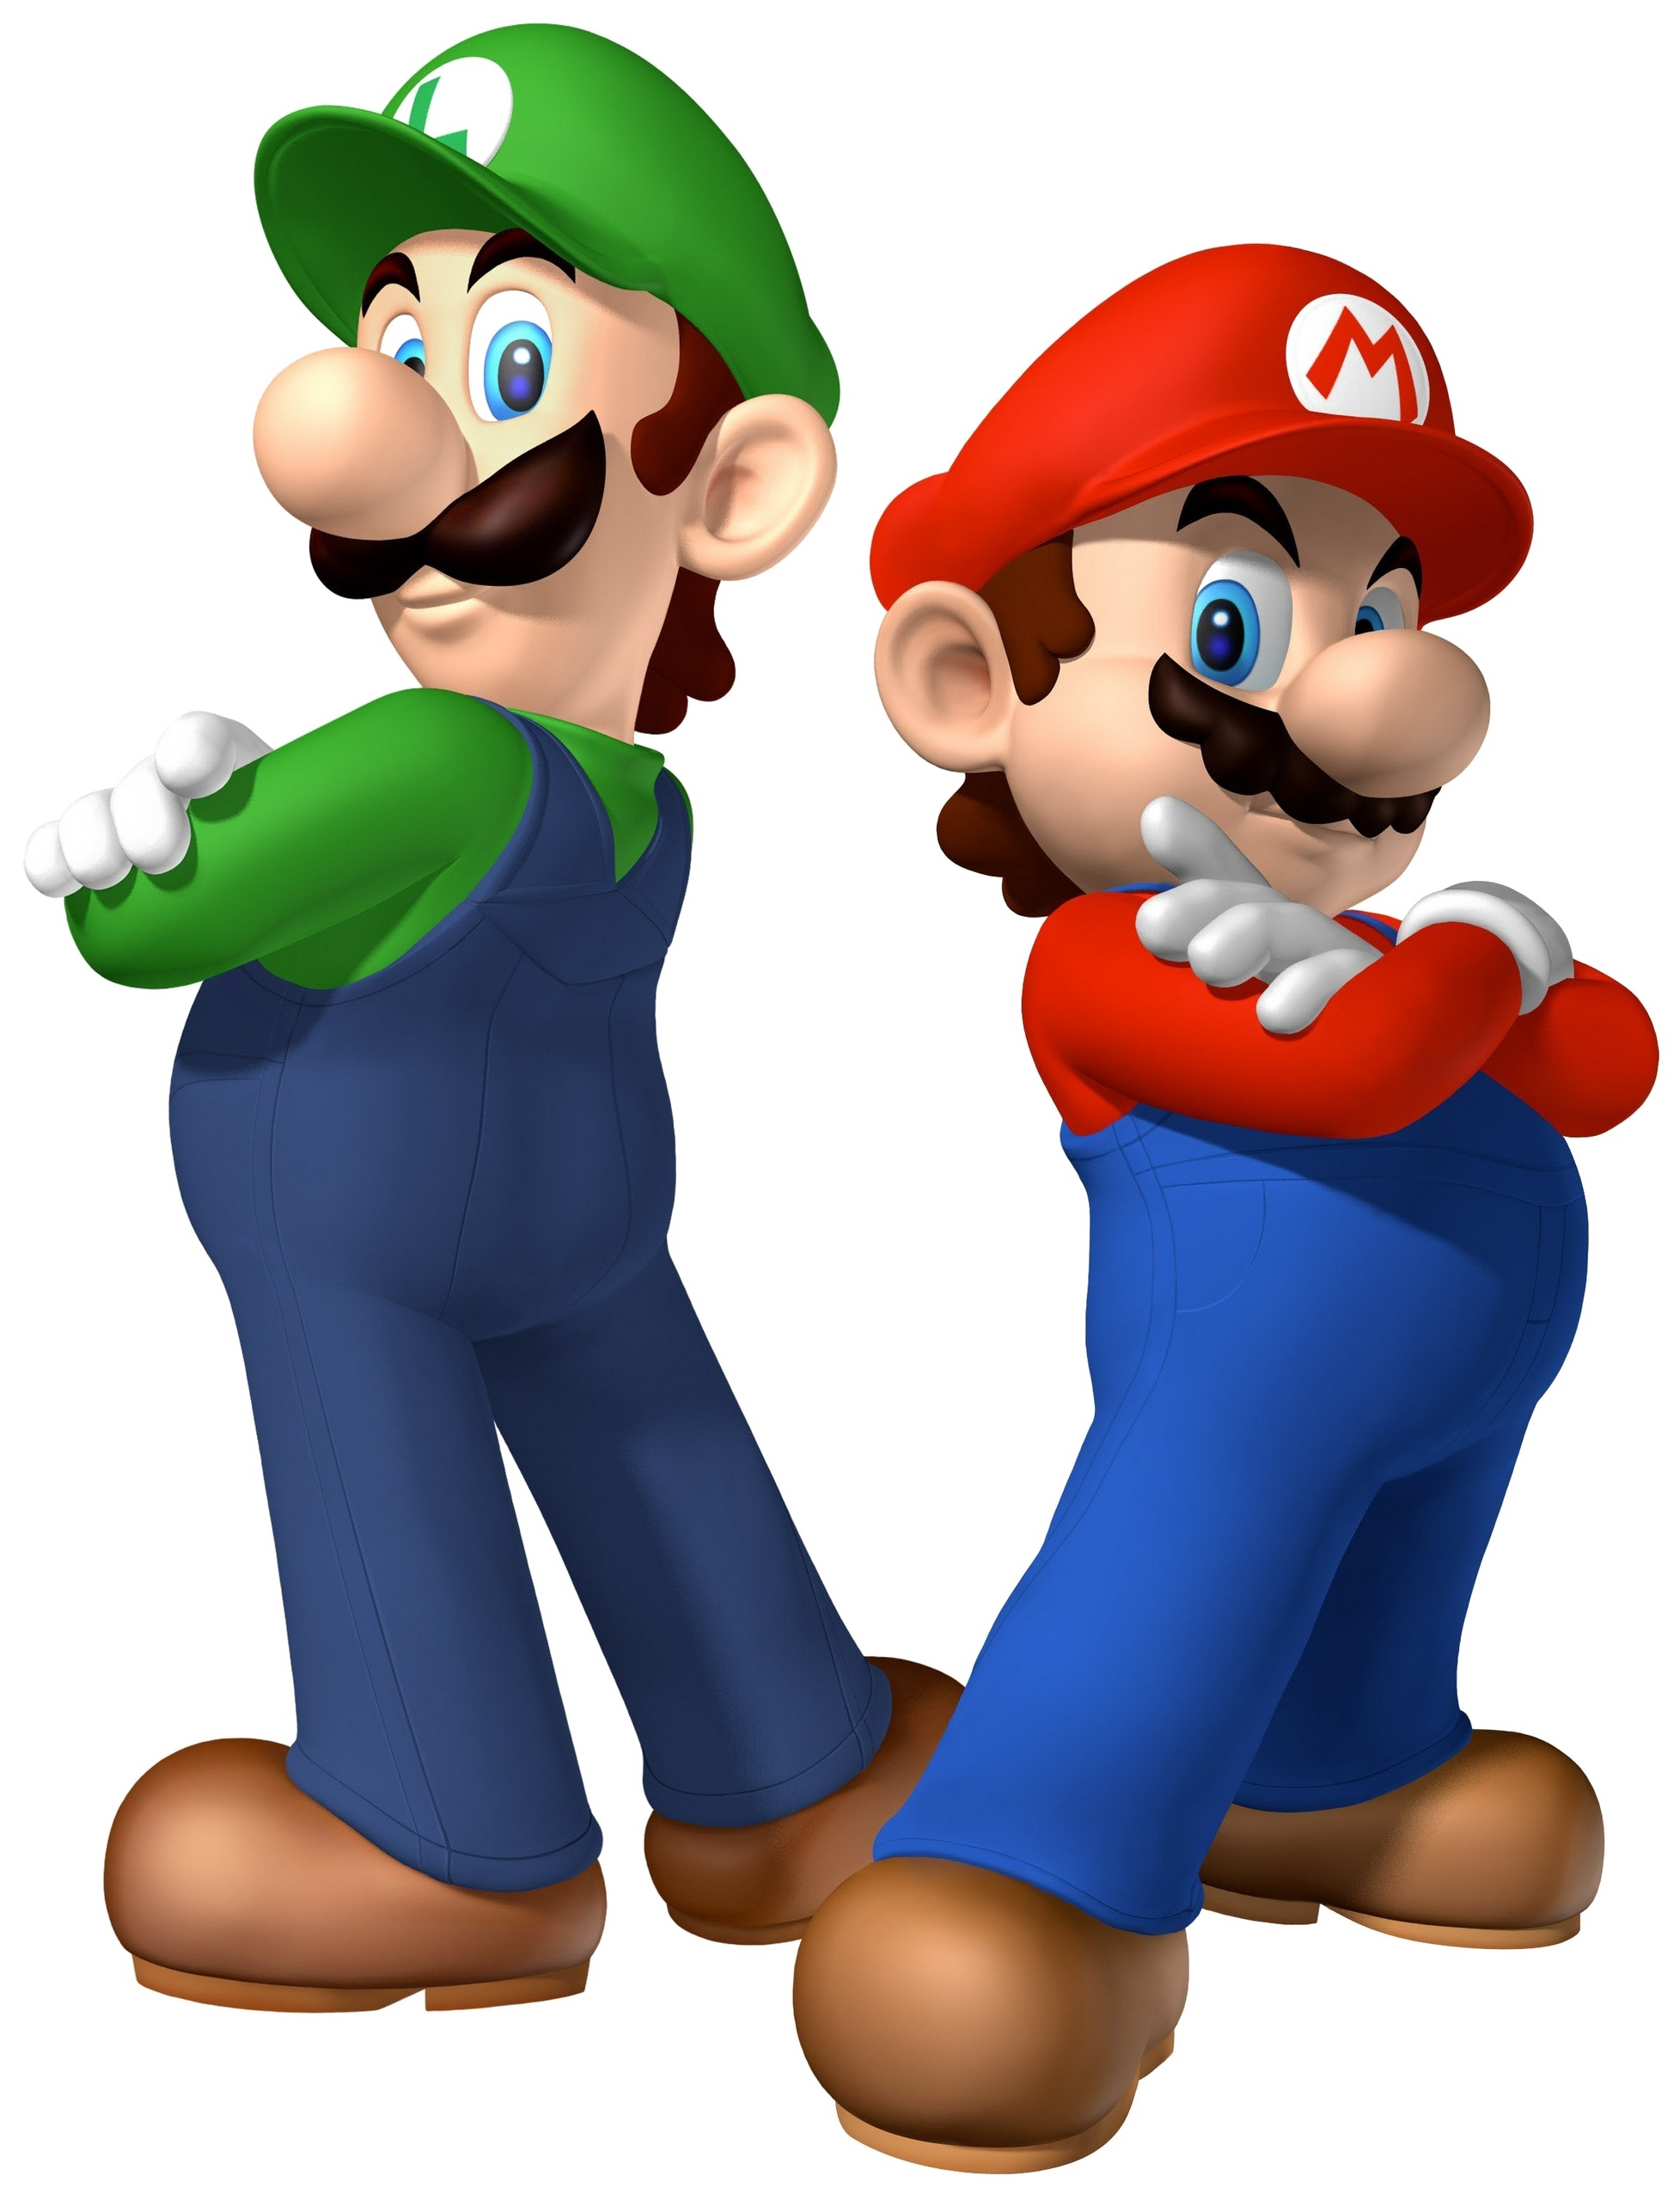 Nintendo Switch Super Mario Party Bundle - 32GB